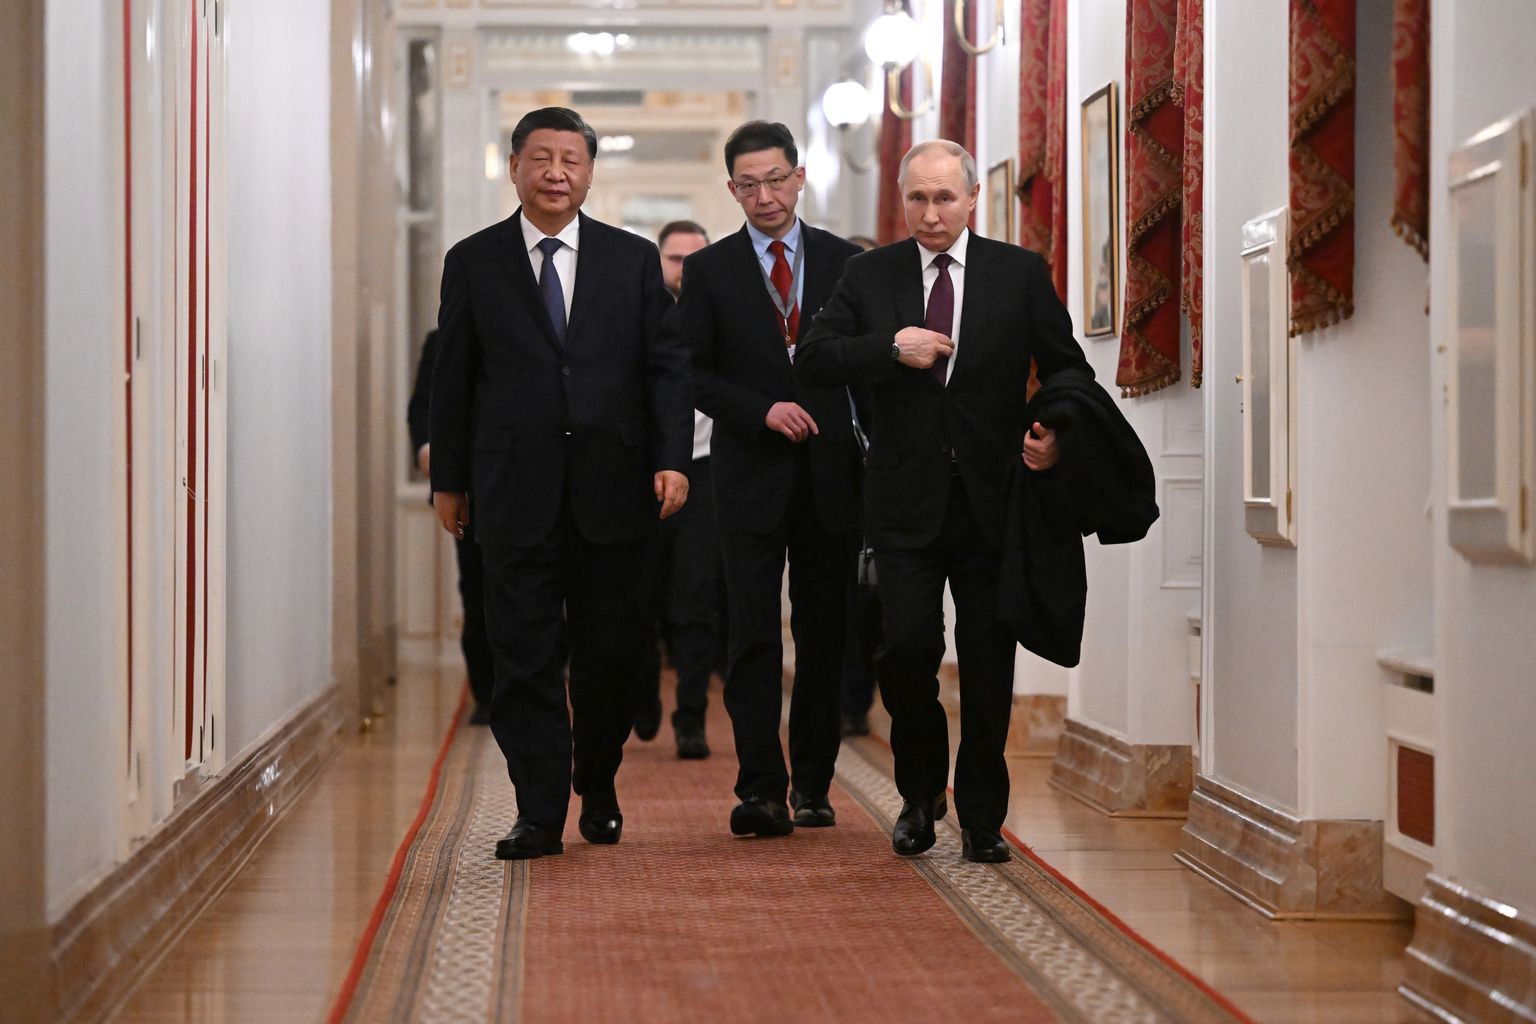 Hiina president Xi Jinping ja Venemaa president Vladimir Putin pärast kõnelusi Kremlis 20. märtsil 2023.